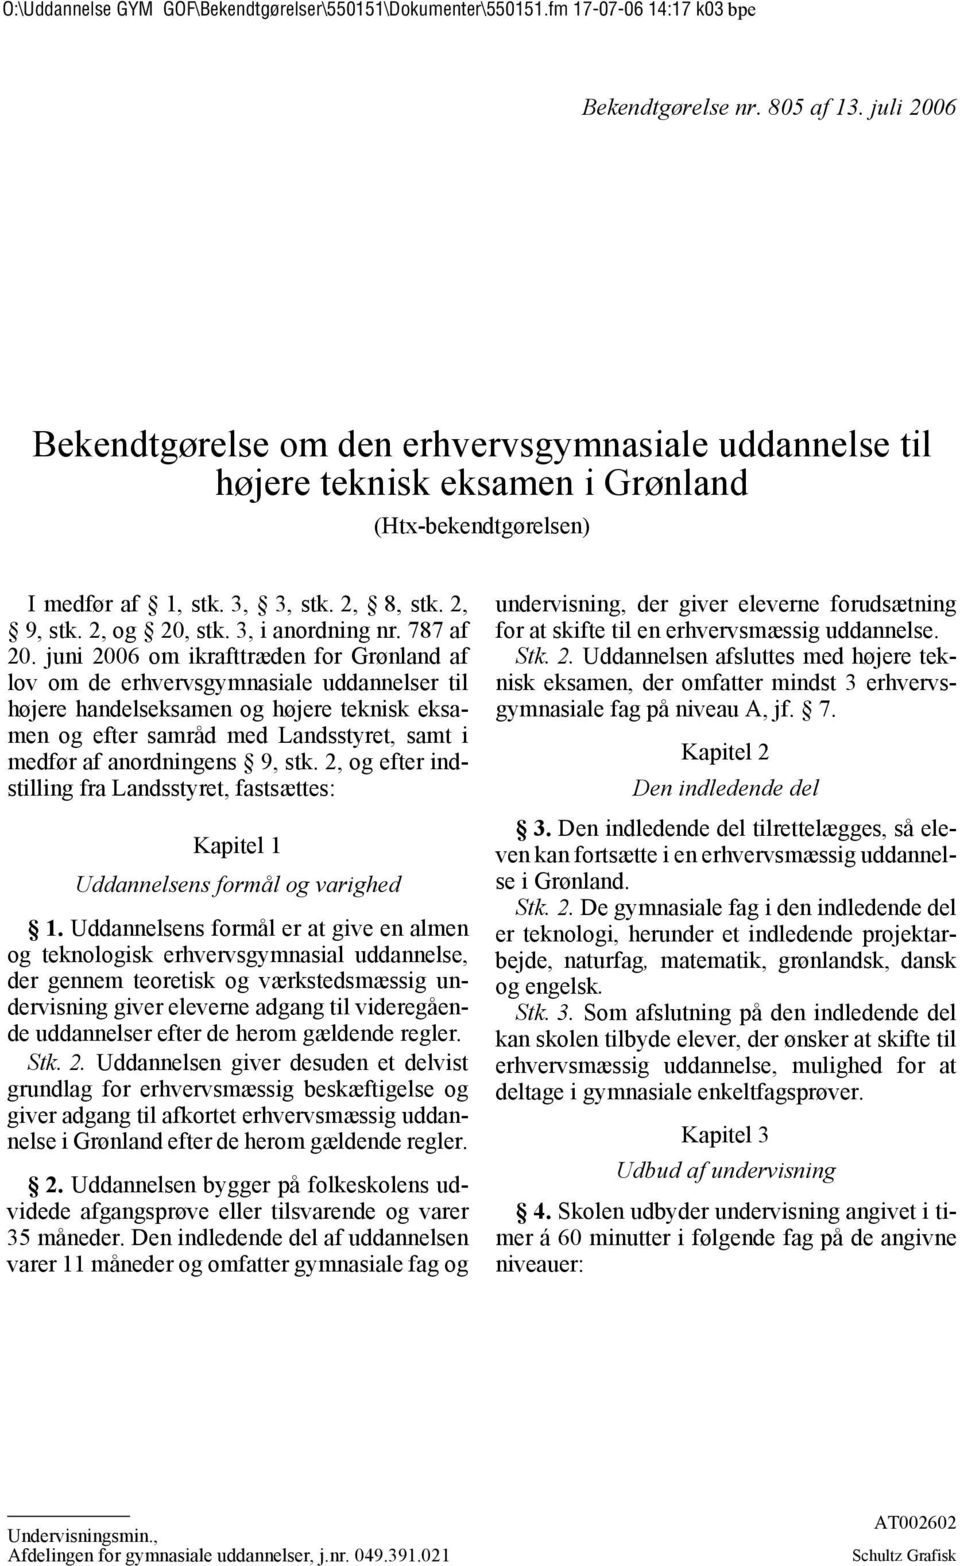 juni 2006 om ikrafttræden for Grønland af lov om de erhvervsgymnasiale uddannelser til højere handelseksamen og højere teknisk eksamen og efter samråd med Landsstyret, samt i medfør af anordningens